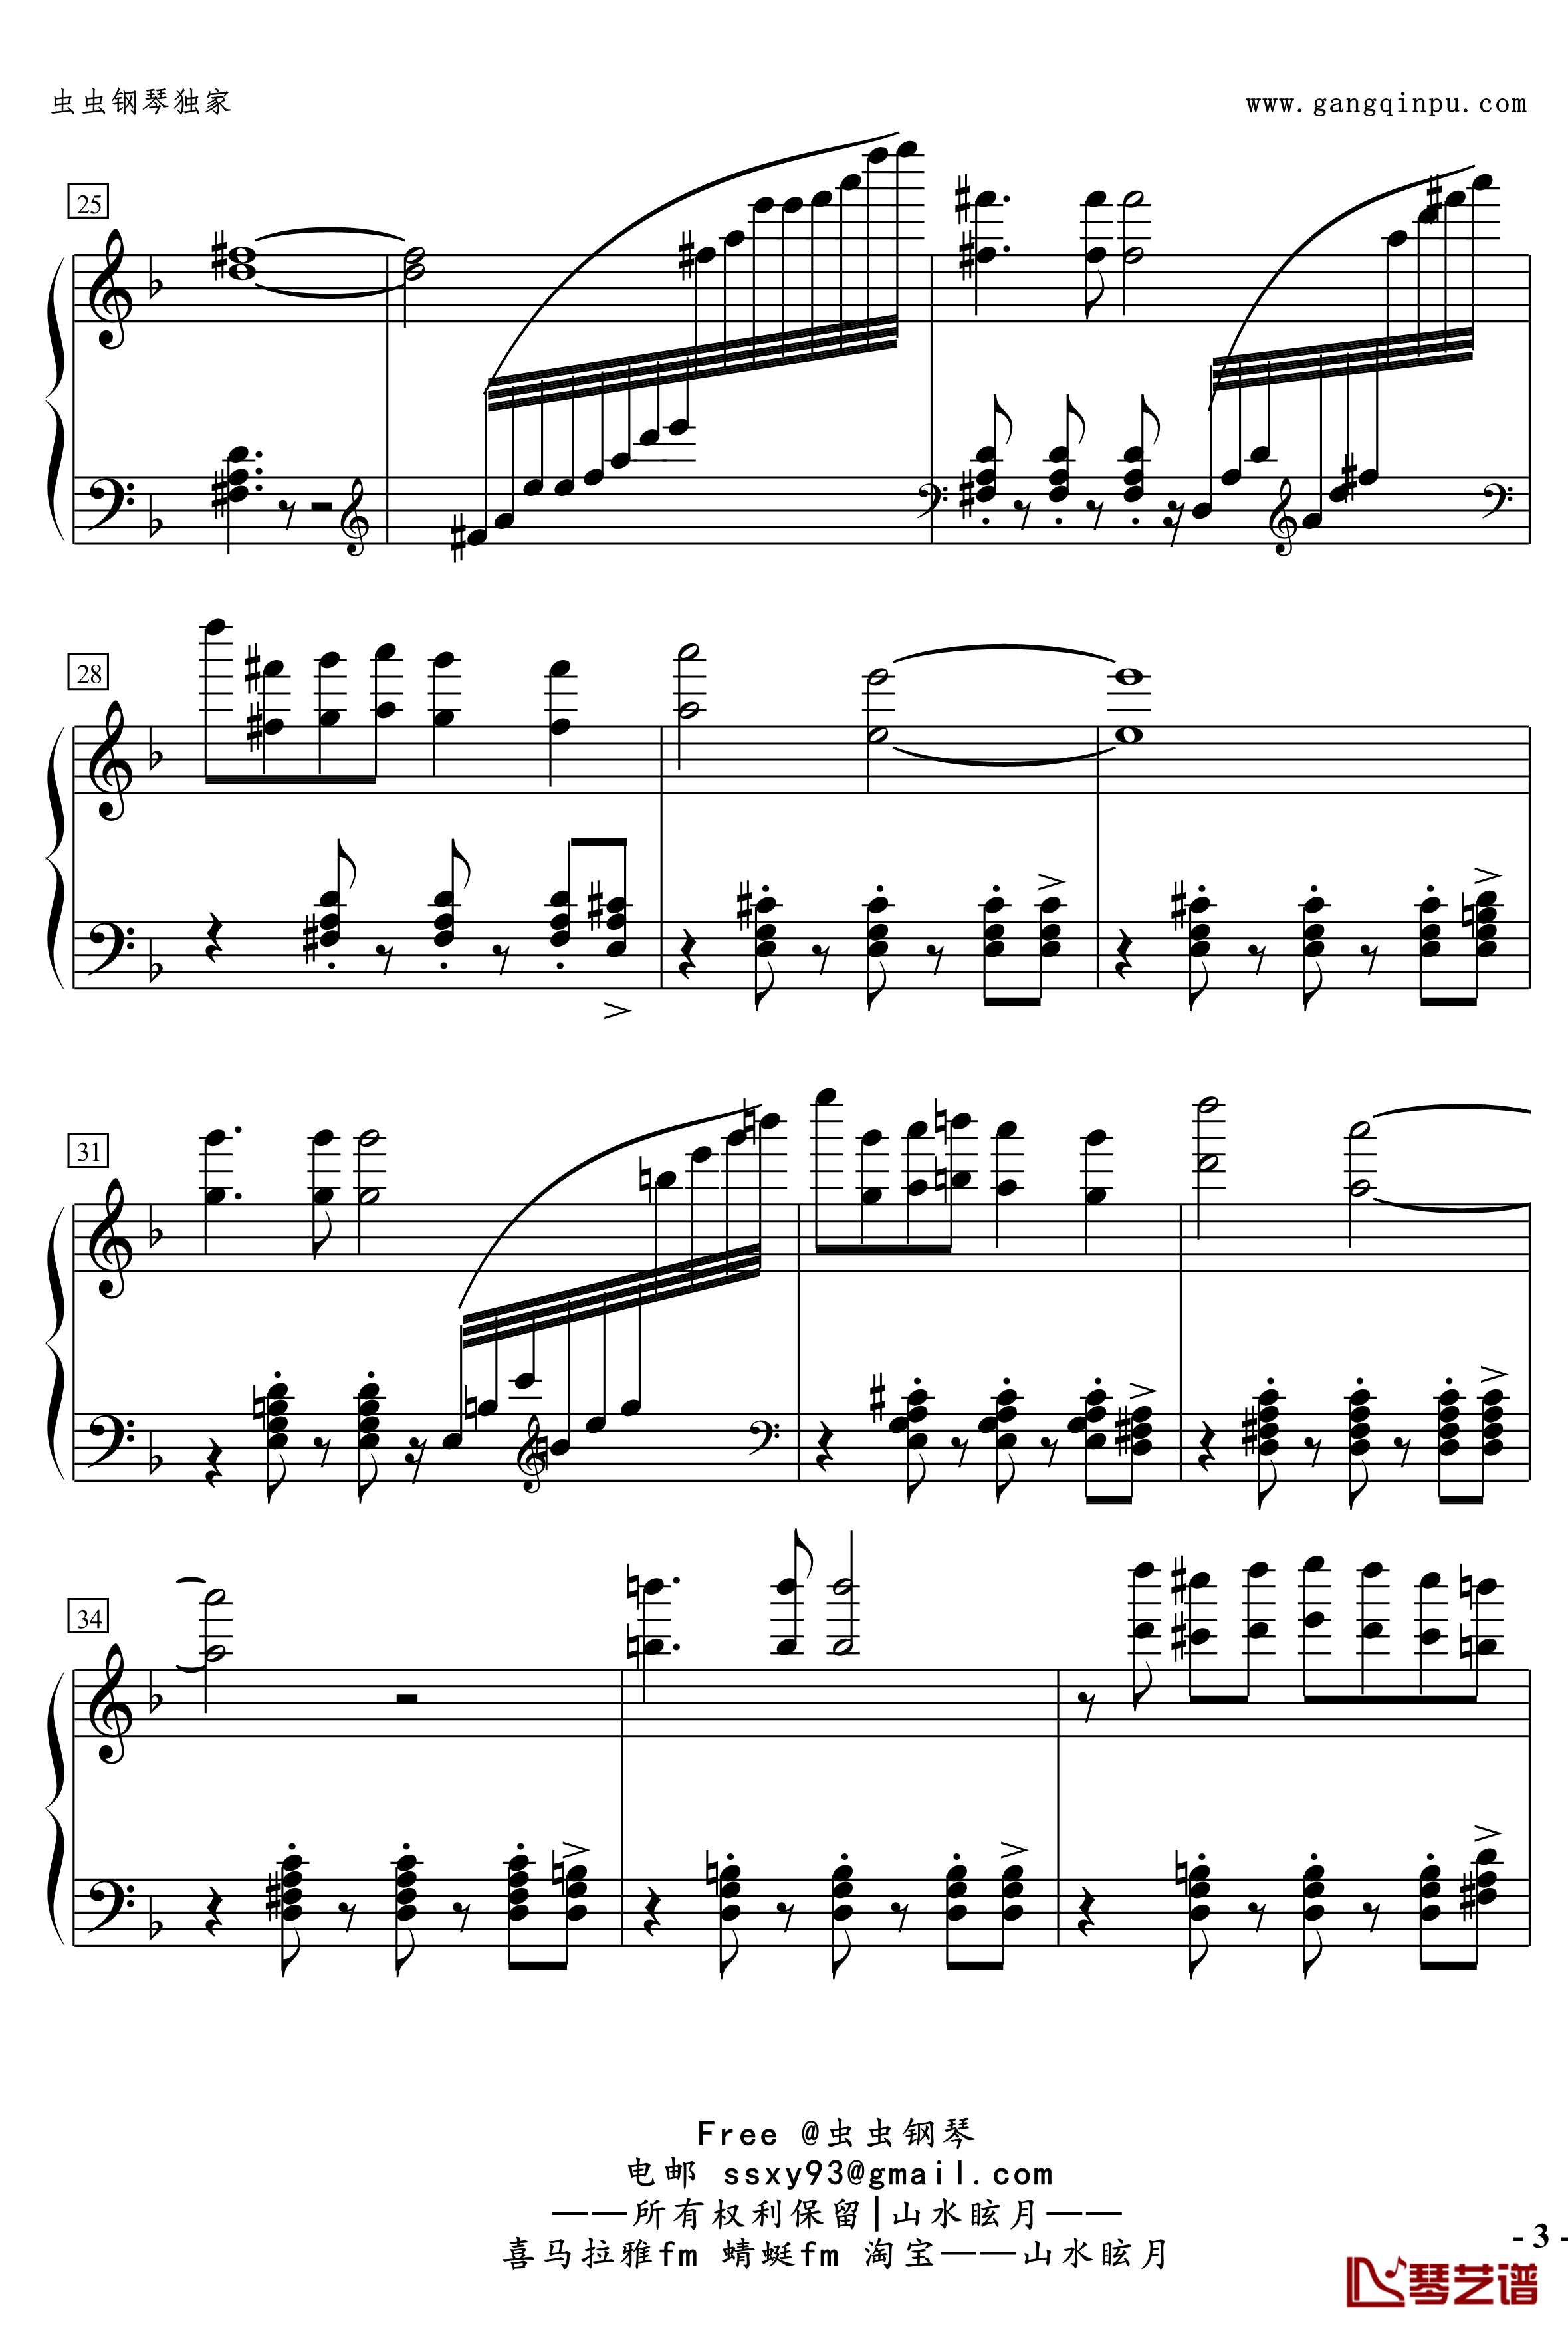 No.2無名探戈钢琴谱-修订-jerry57433